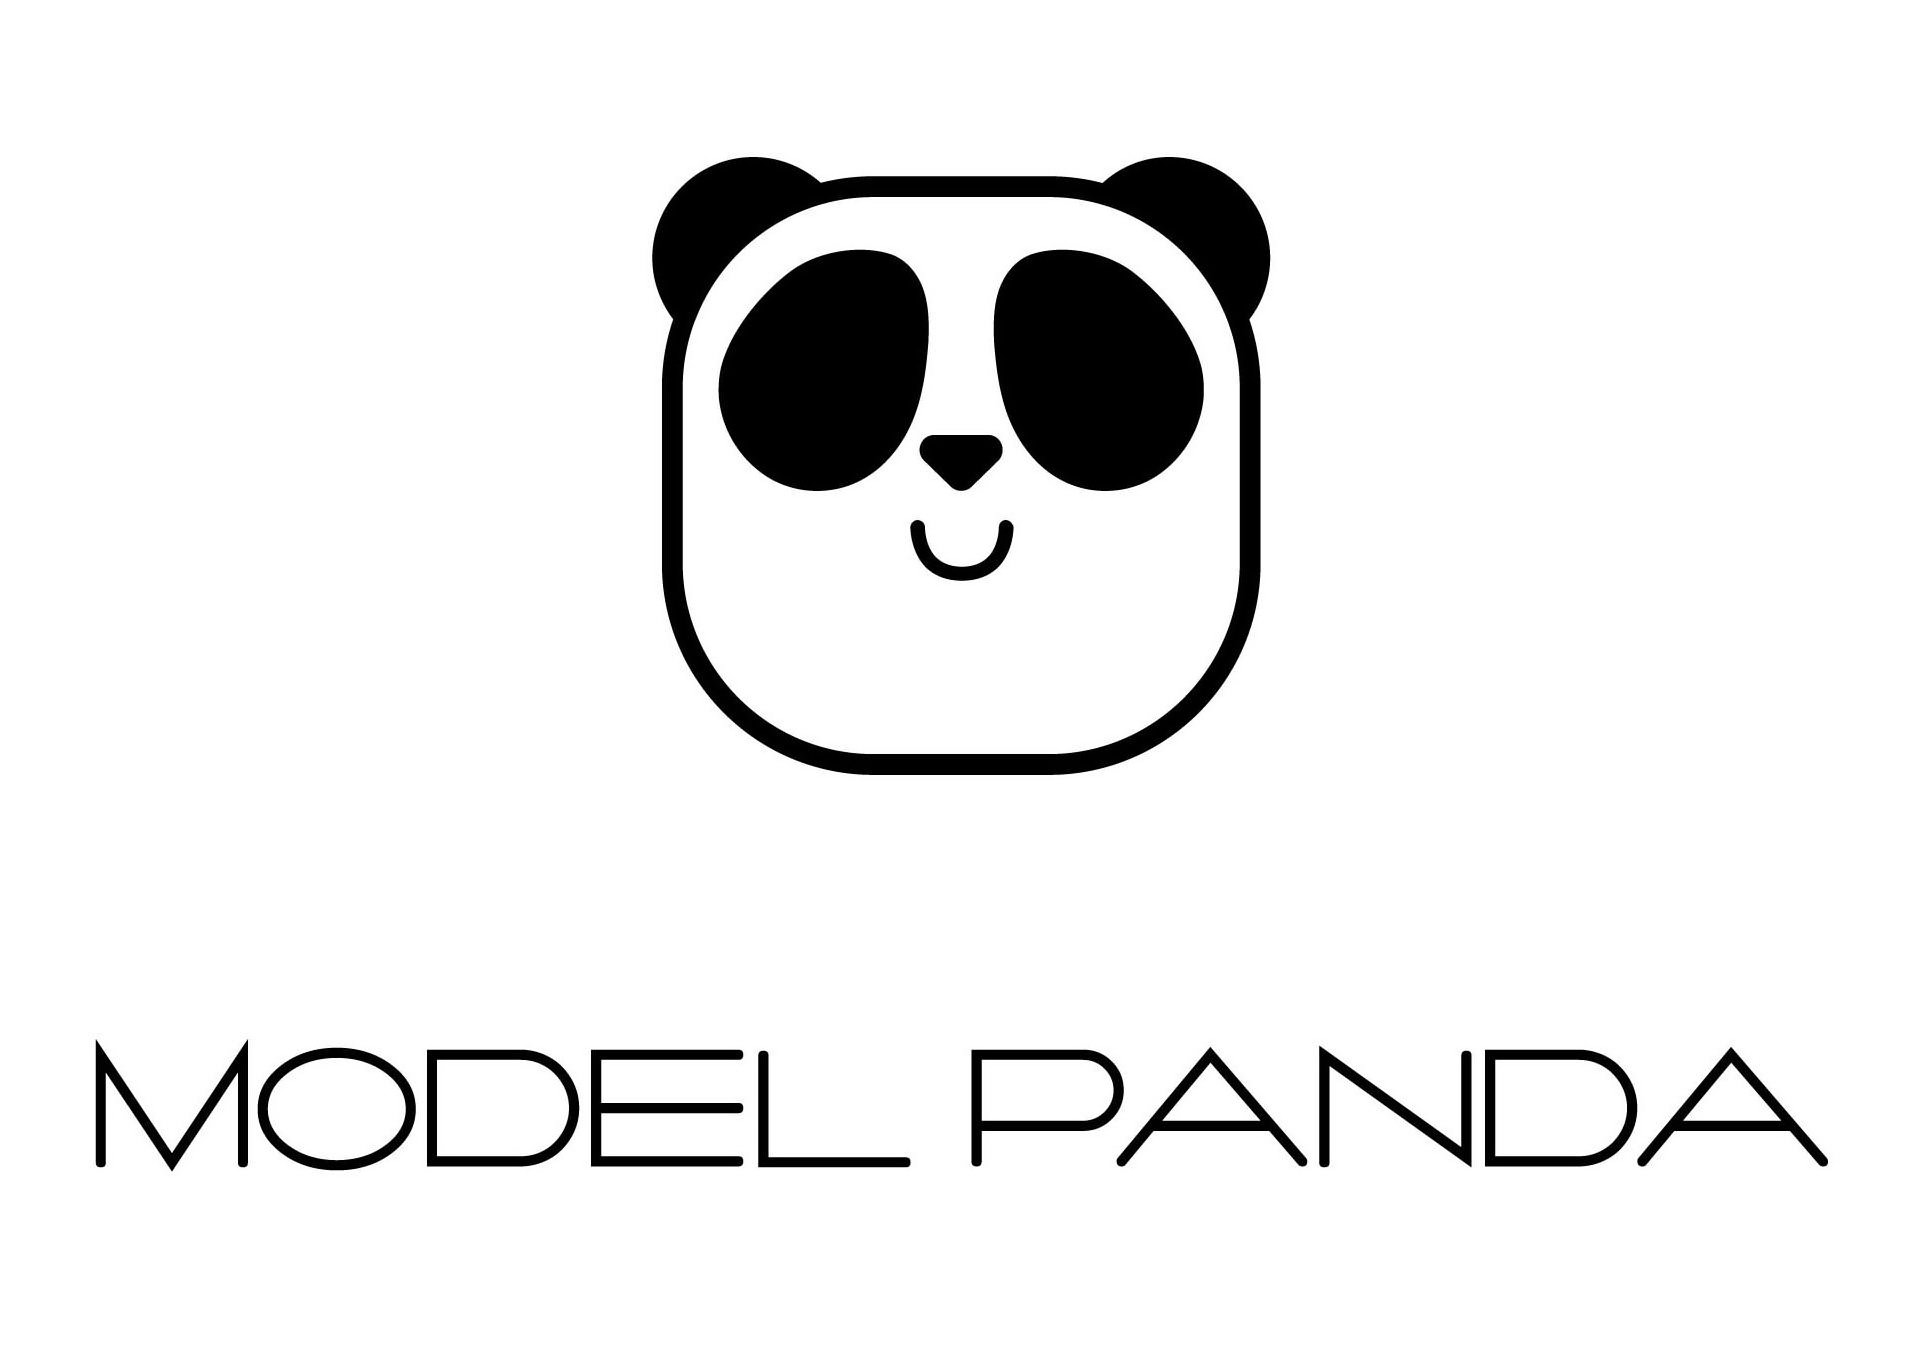  MODEL PANDA